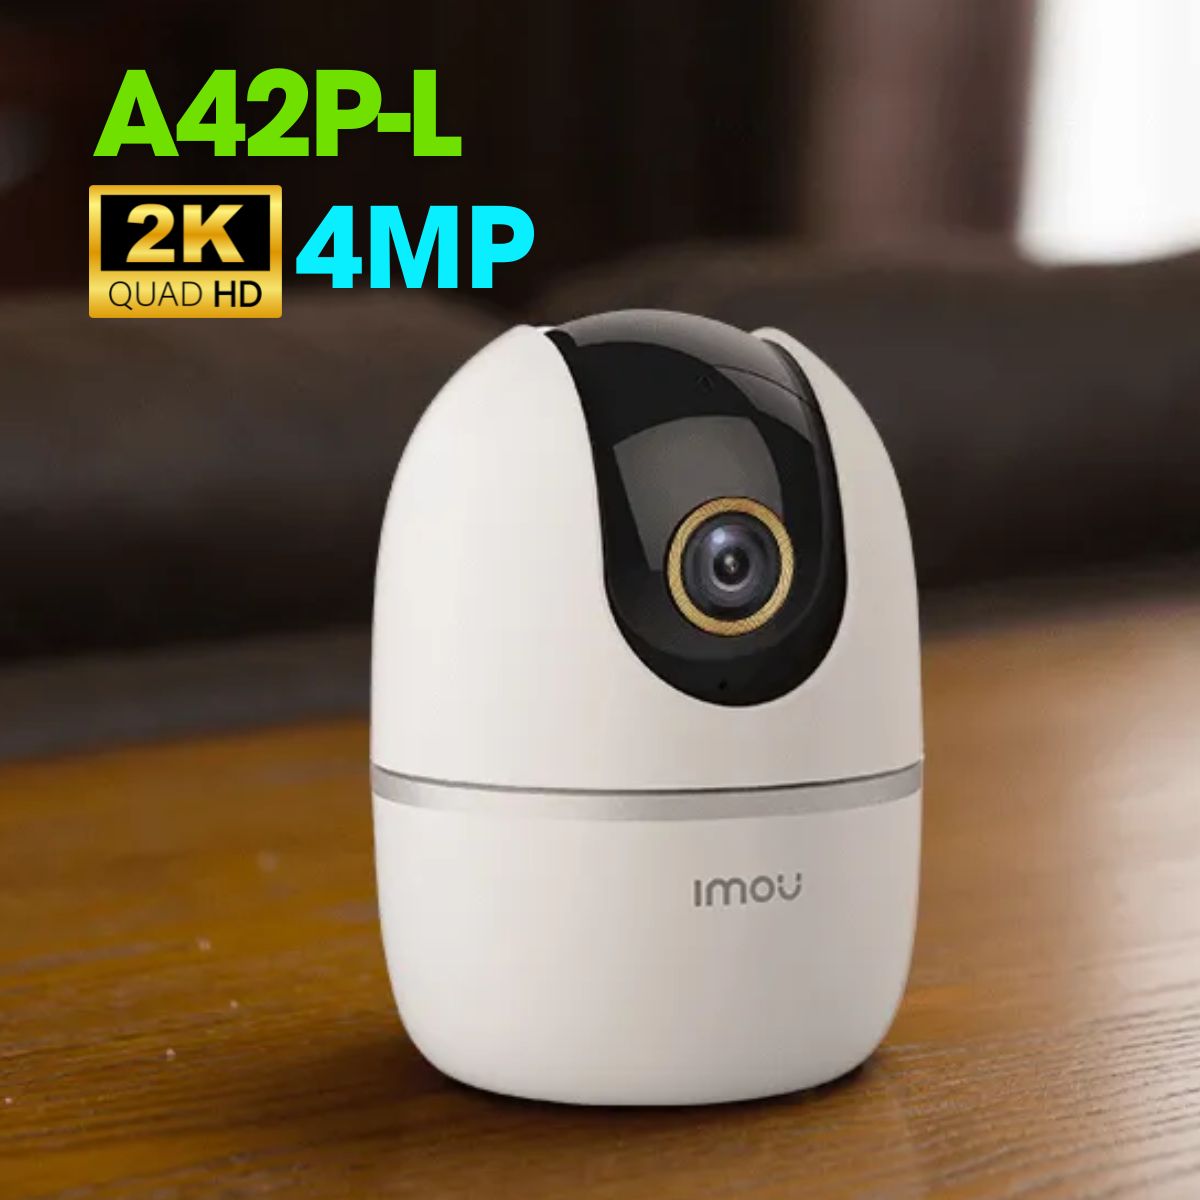 Camera wifi không dây IMOU A42P-L 4MP, tích hợp mic và loa, hồng ngoại 10m, chế độ riêng tư